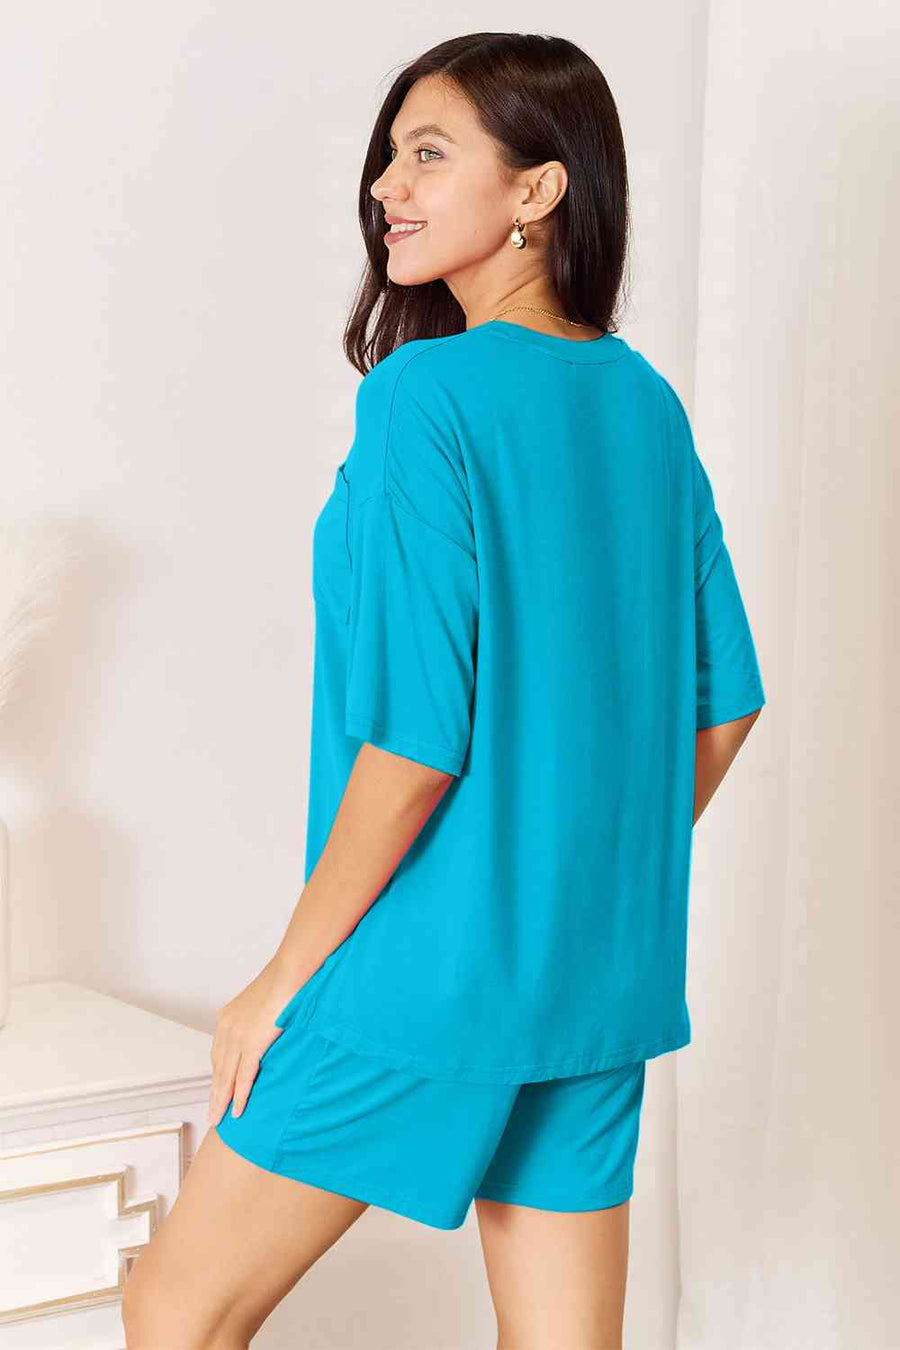 Základní Bae Full Size Soft Rayon Top a šortky Set-Trendsi-Sky Blue-S-SatinBoutique